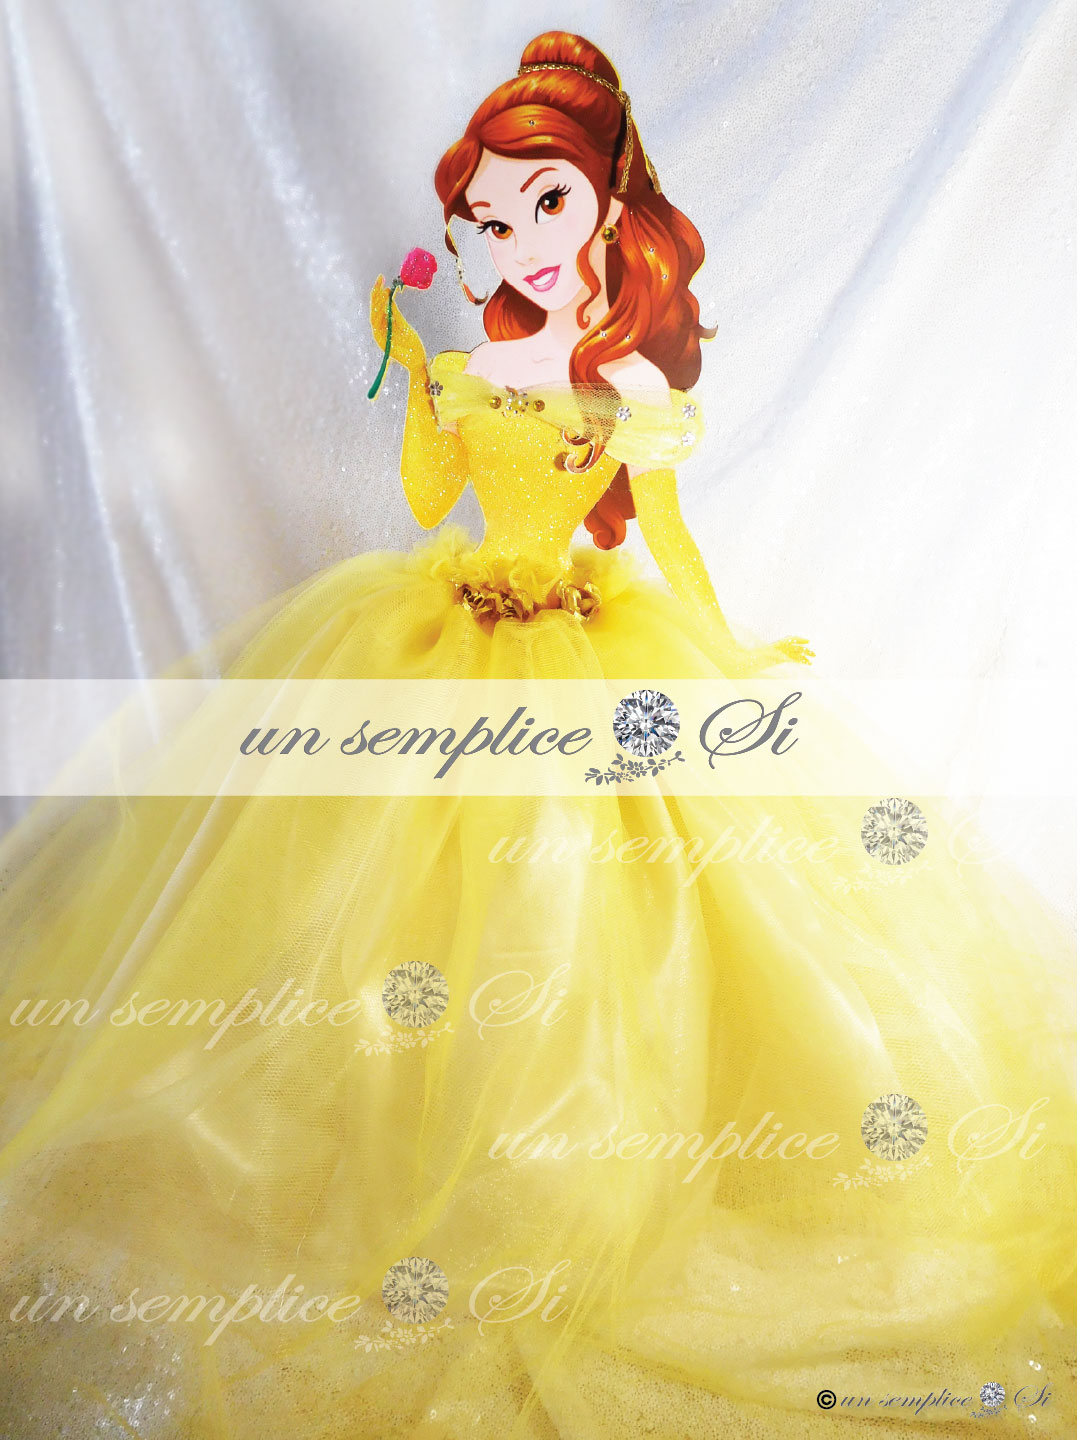 Dress-up Doll Contest - Princesses Disney - fanpop